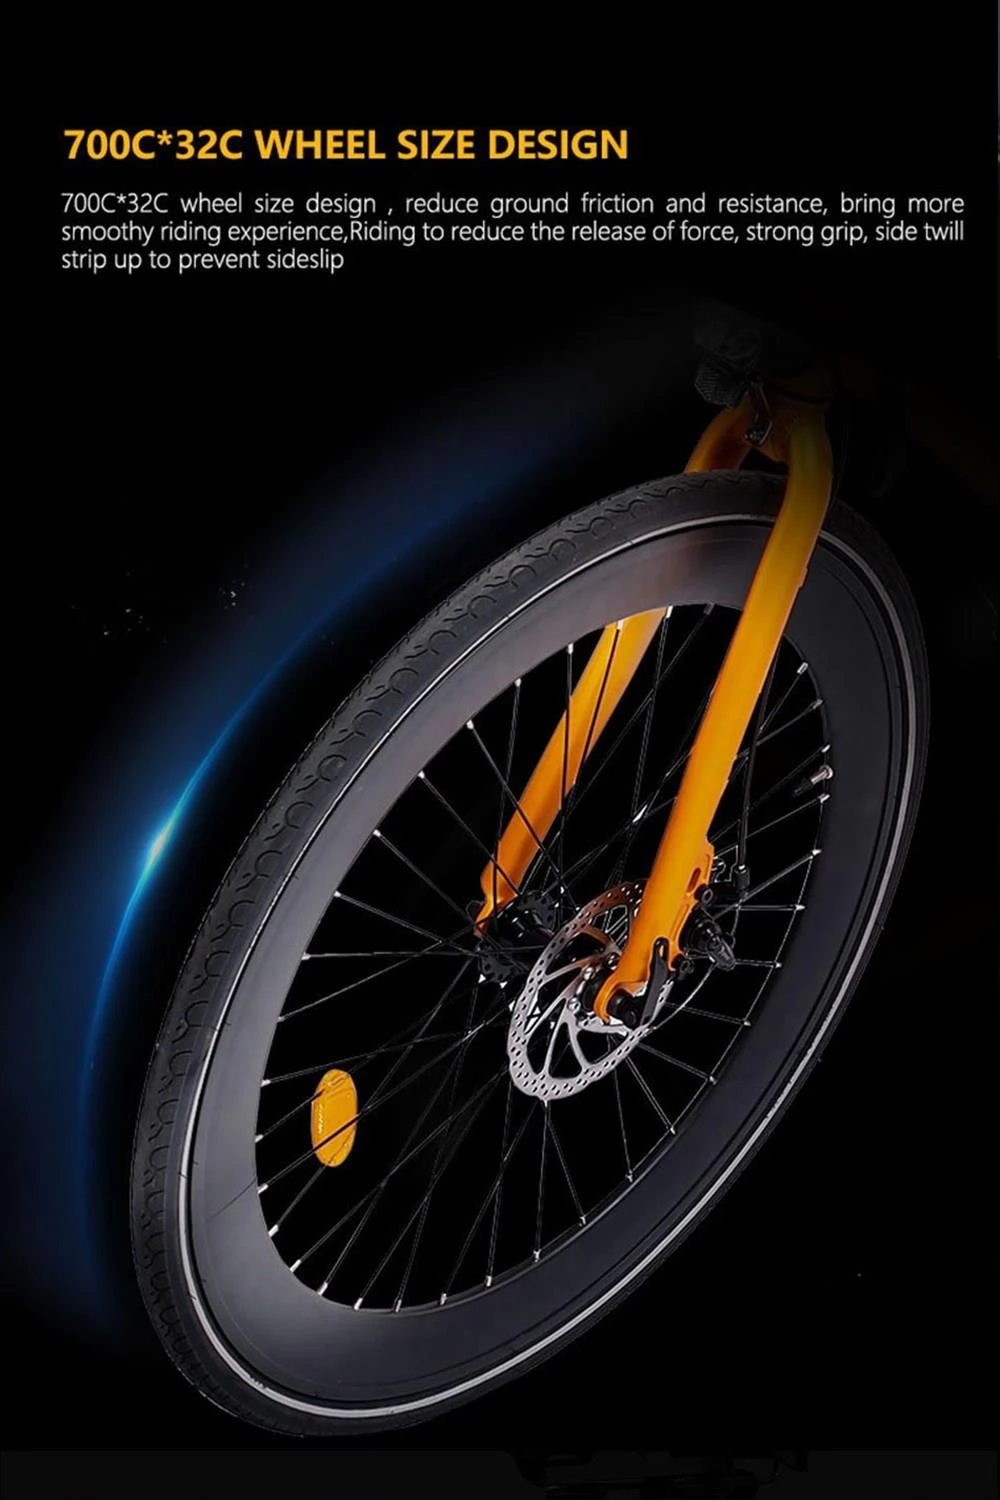 GOGOBEST R2 700C*32C Tires Electric City Bike - 36V 250W Brushless Motor & 9.6Ah Battery